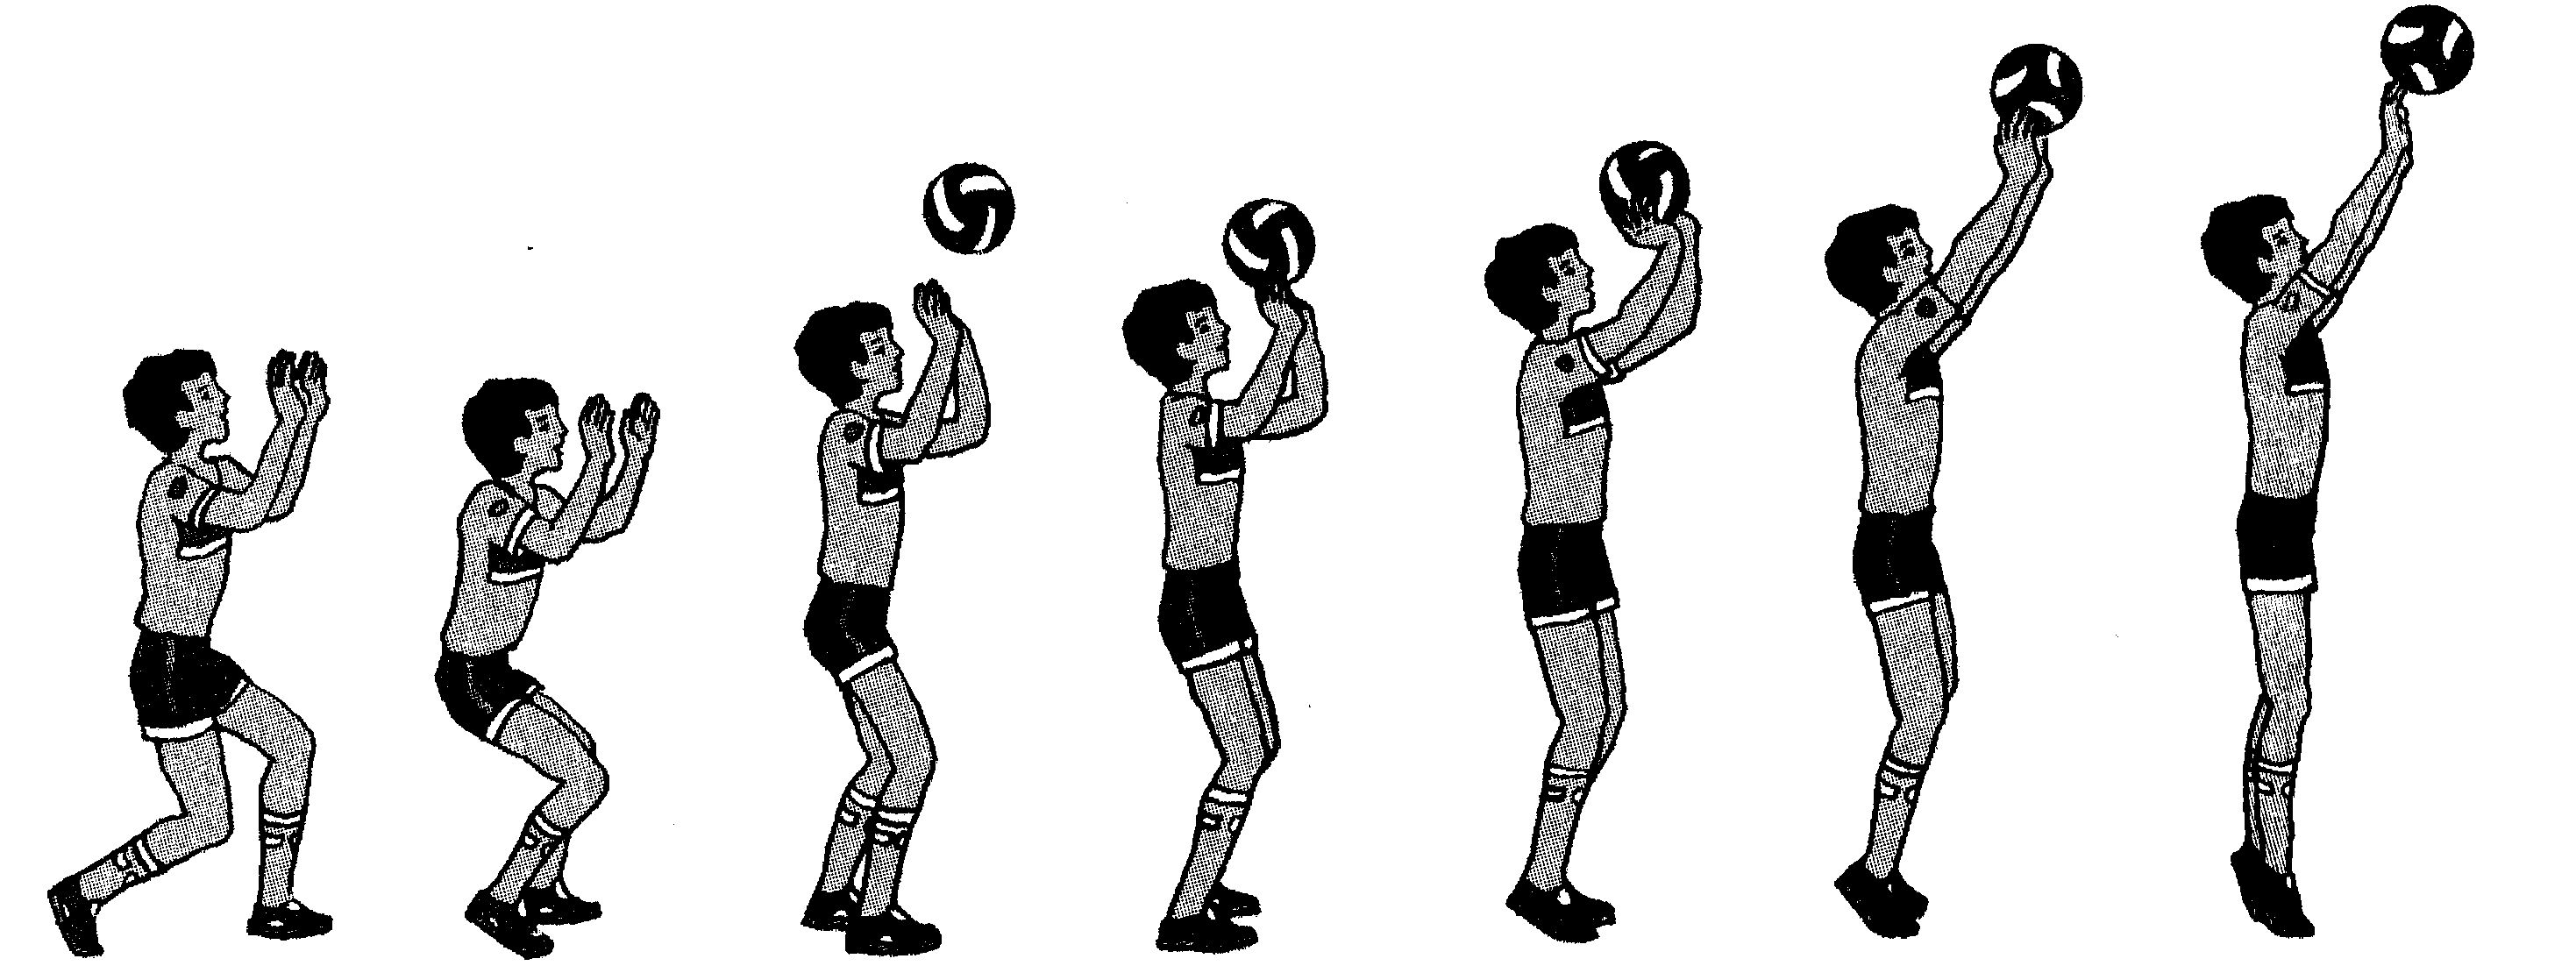 Элементы волейбола передачи. Верхняя передача мяча в волейболе. Верхняя передача мяча двумя руками в волейболе. Техника передач мяча в парах сверху и снизу. Волейбол. Передача мяча сверху двумя руками в волейболе.